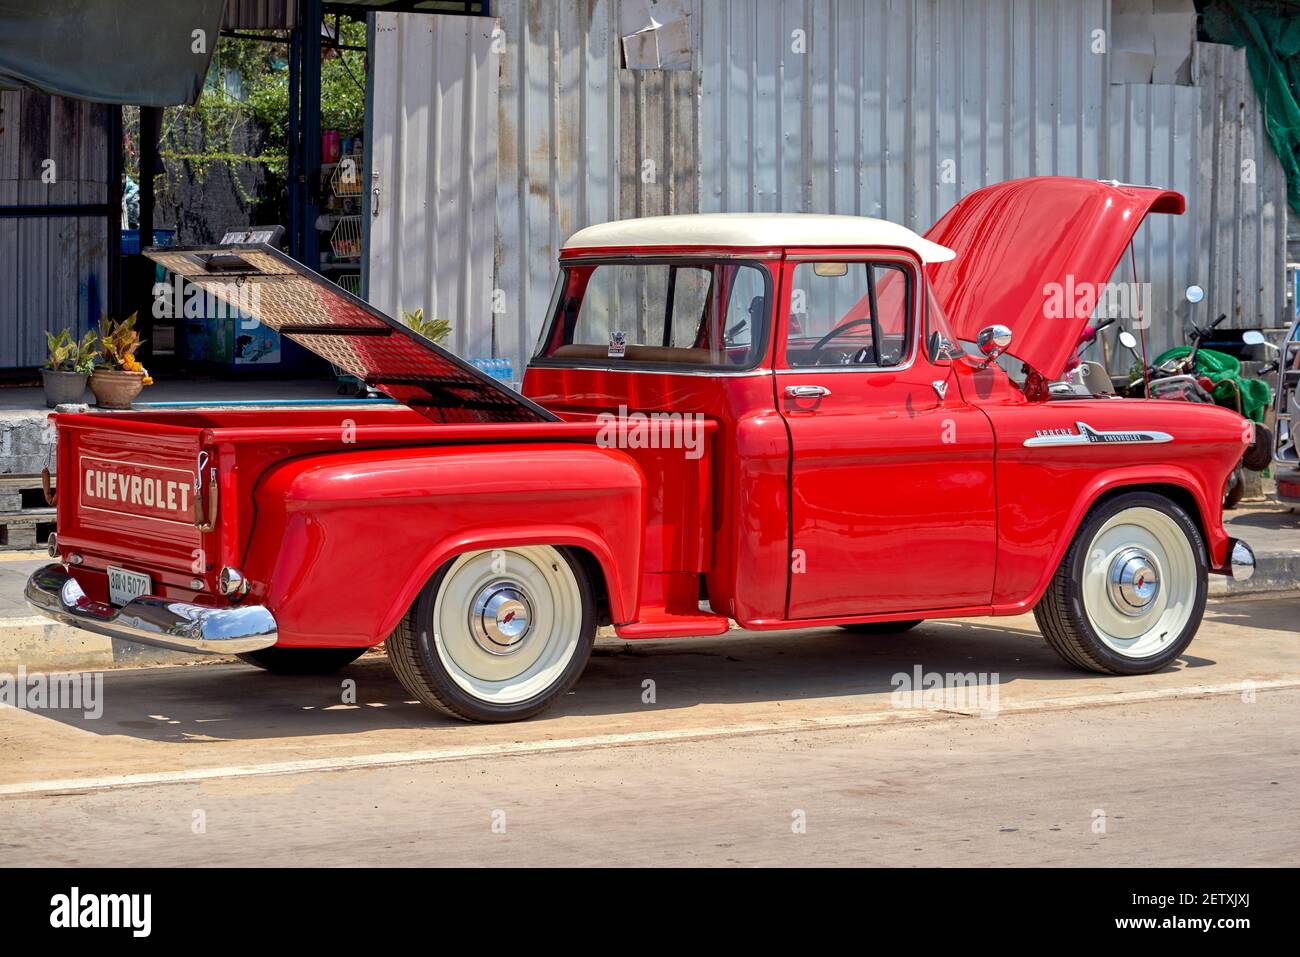 Chevrolet Apache 31,1959 vintage Chevrolet Pickup-Truck in rot unberührte concours d'Elegance Zustand, nachdem eine vollständige Restaurierung unterzogen. Stockfoto